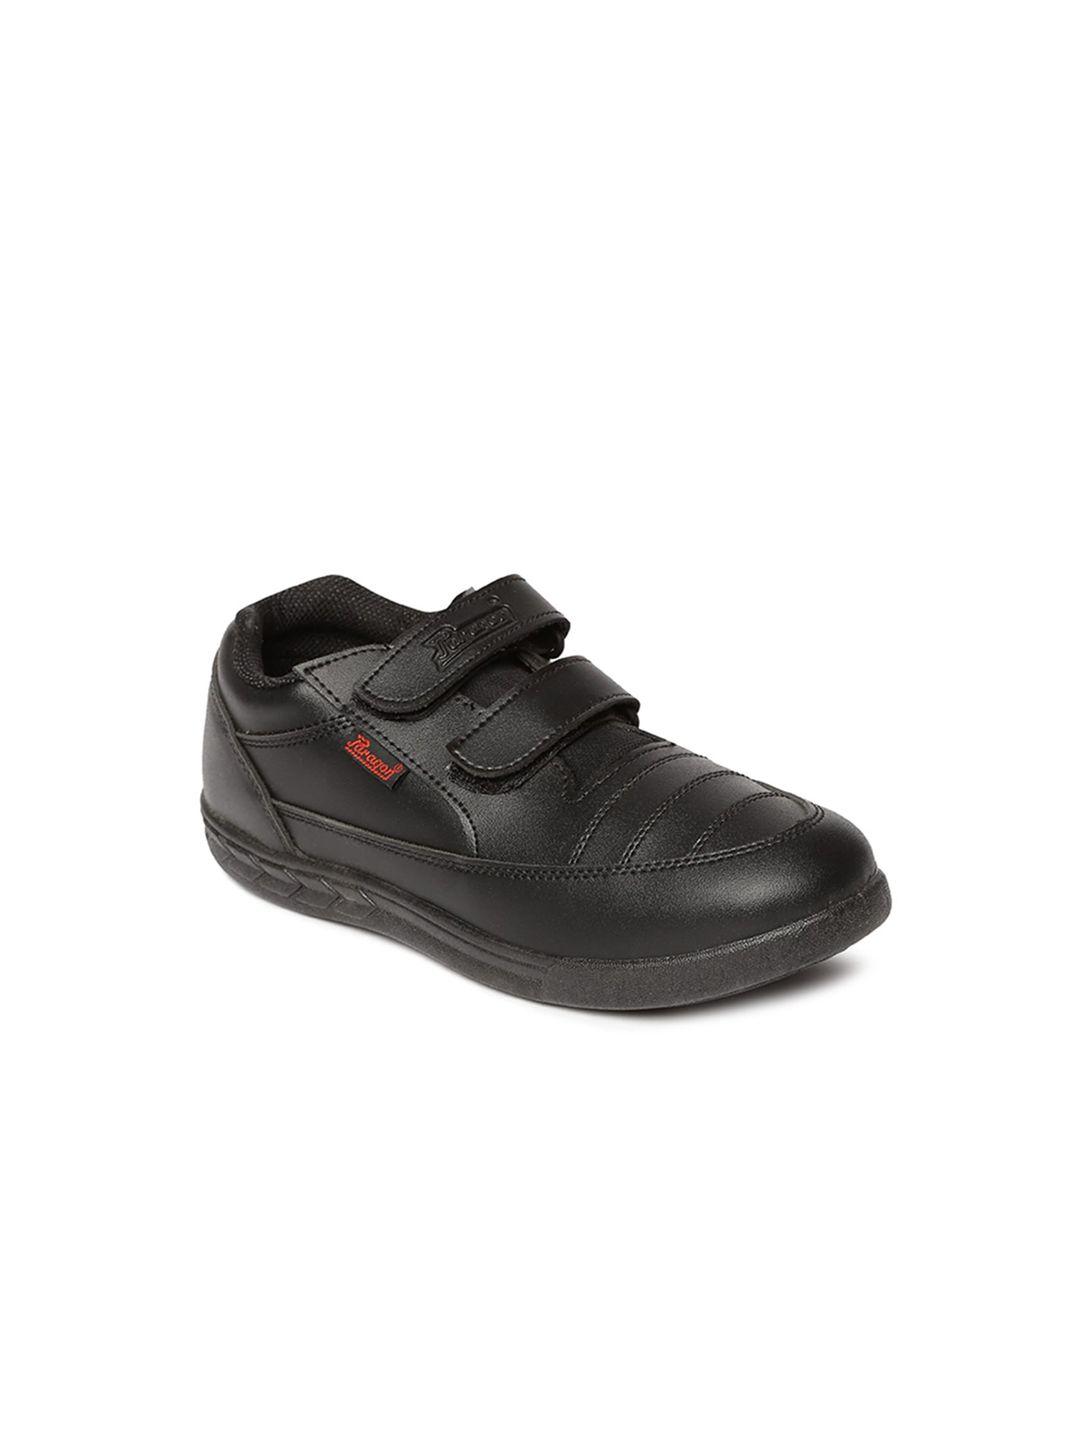 paragon-kids-black-school-shoes